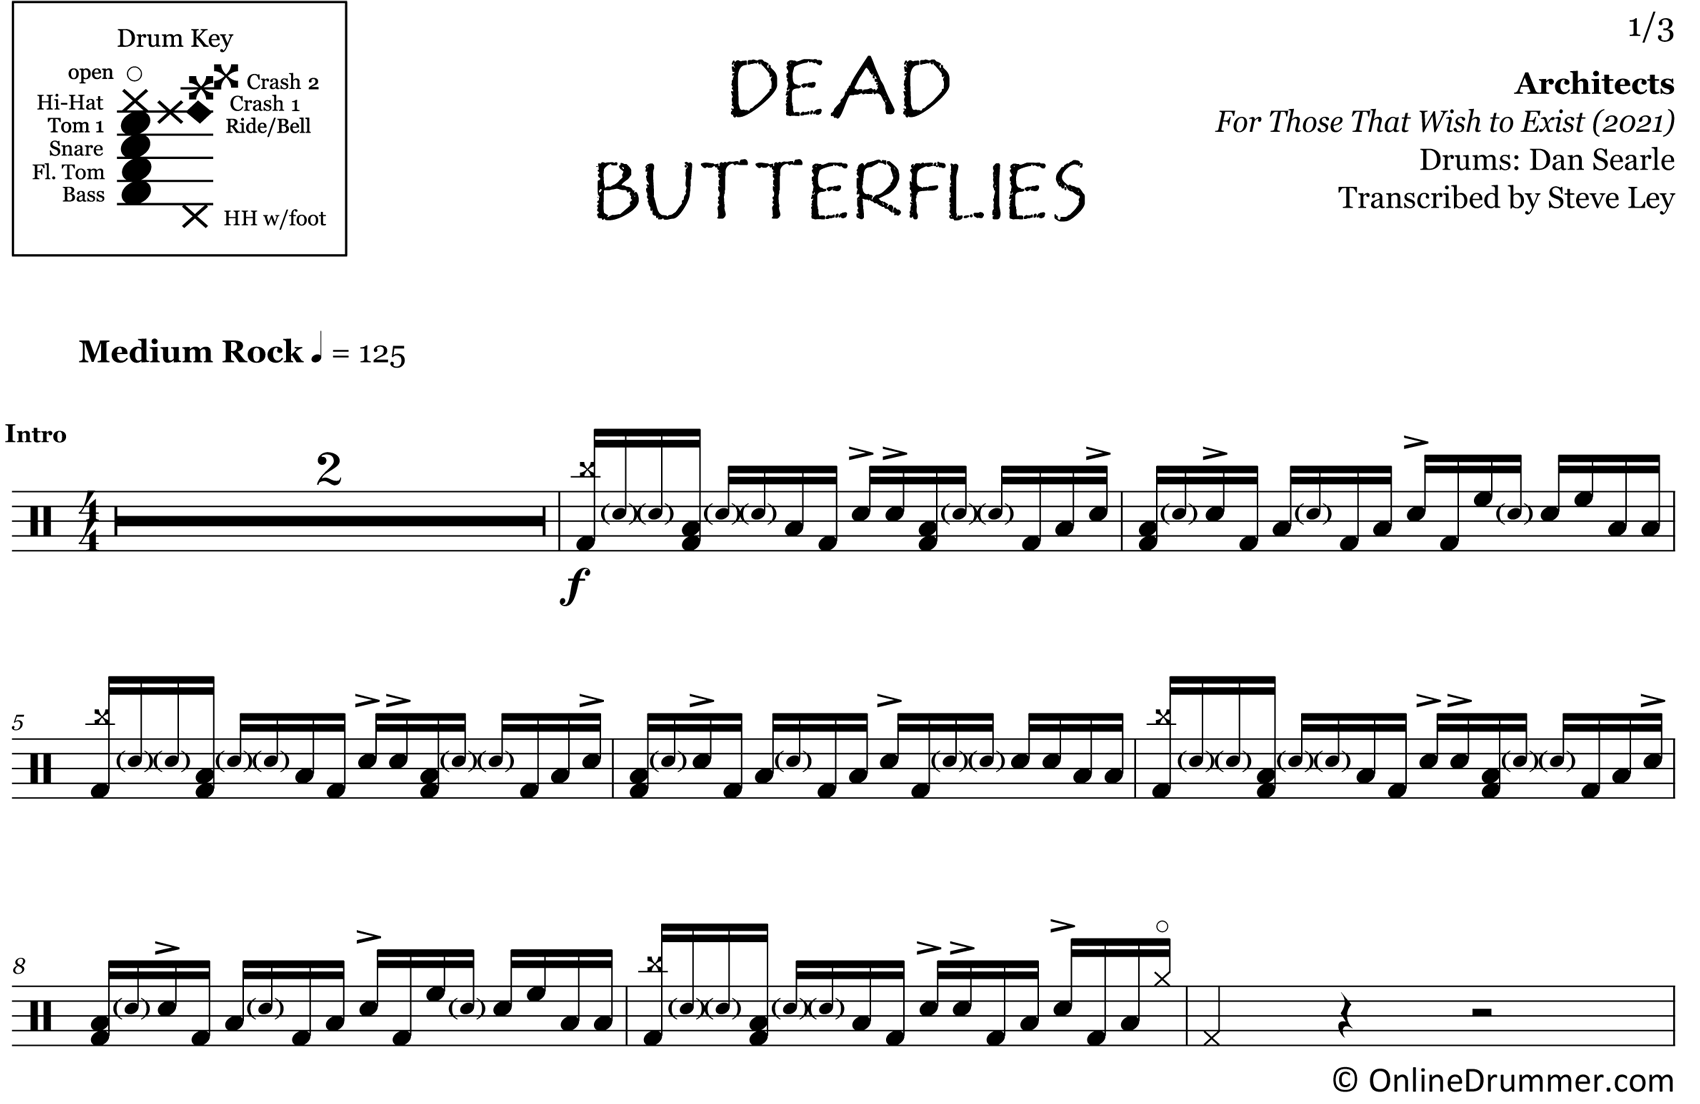 Dead Butterflies - Architects - Drum Sheet Music